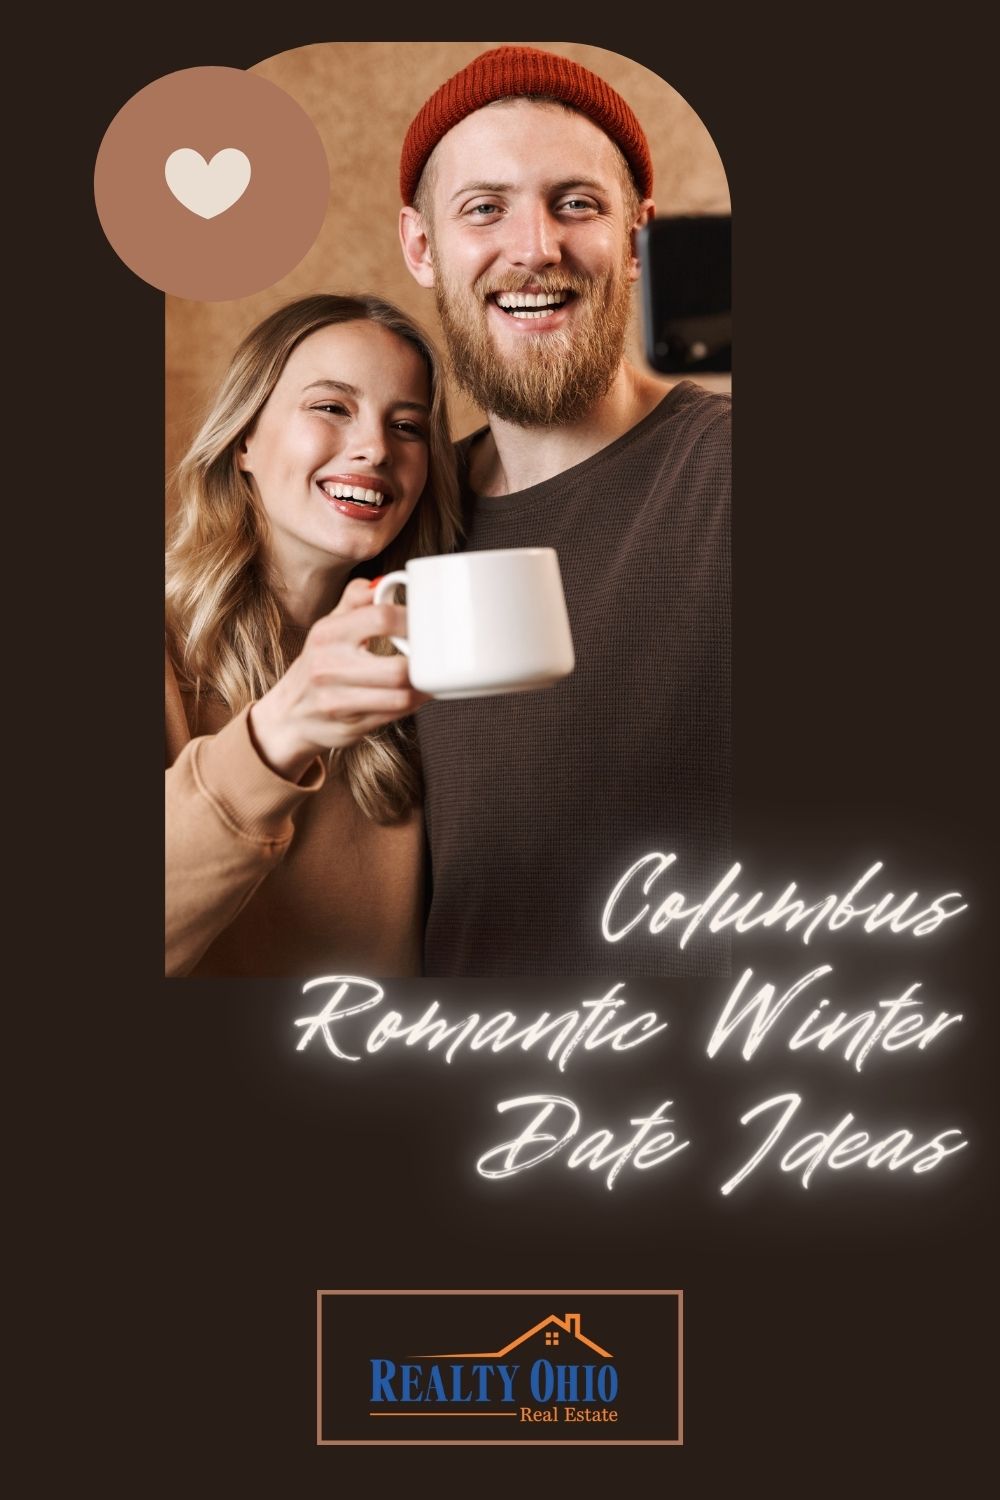 Columbus Romantic Winter Date Ideas